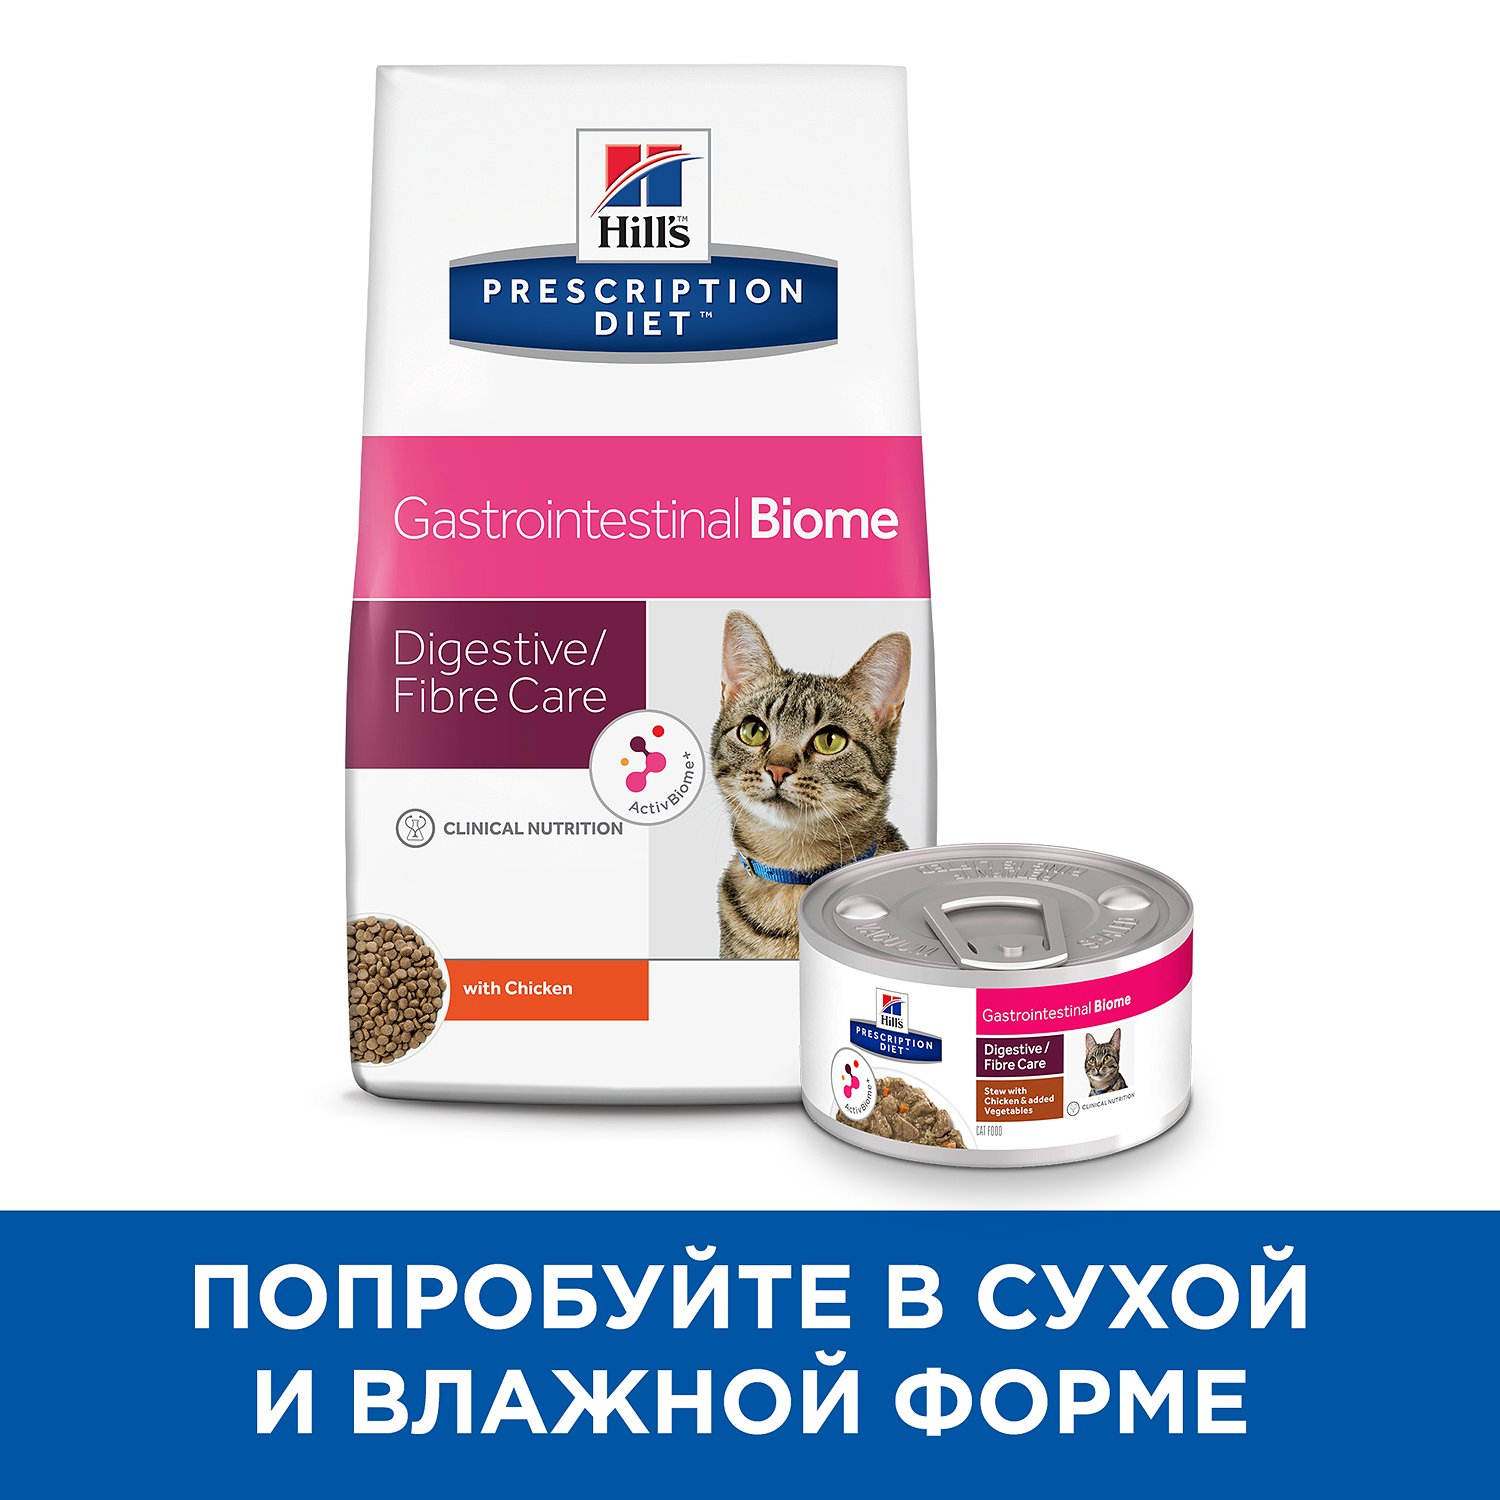 Лікувальний сухий корм для котів Hills Pescription Diet Gastrointestinal Biome - 8